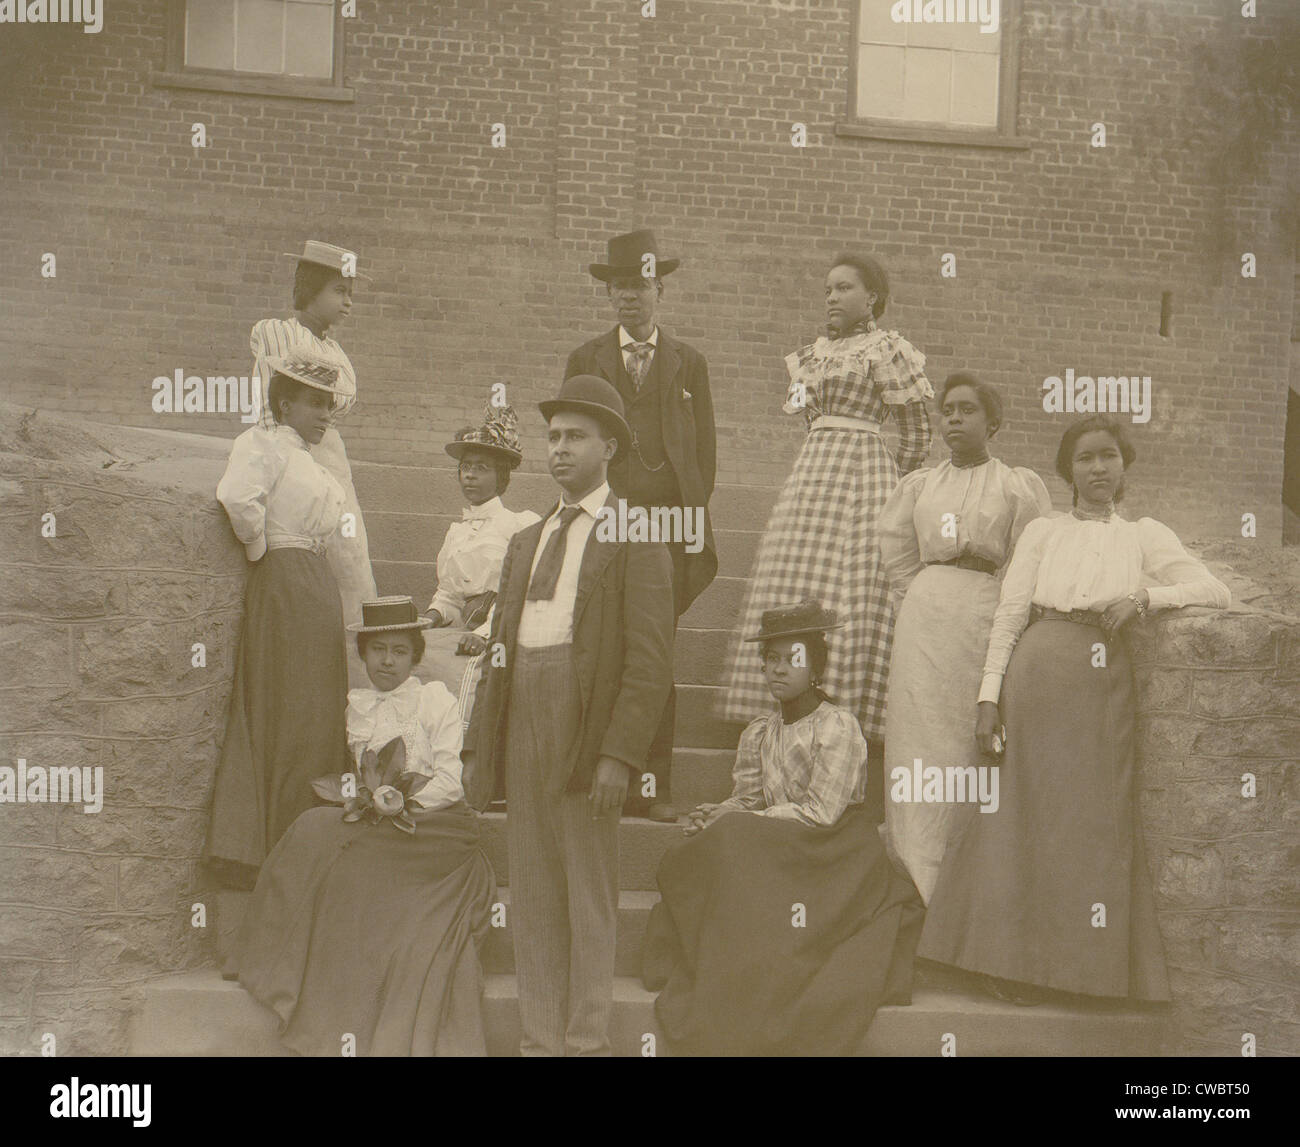 Gut gekleidete junge afroamerikanische Männer und Frauen, möglicherweise College-Studenten in Georgien ca. 1900. Stockfoto